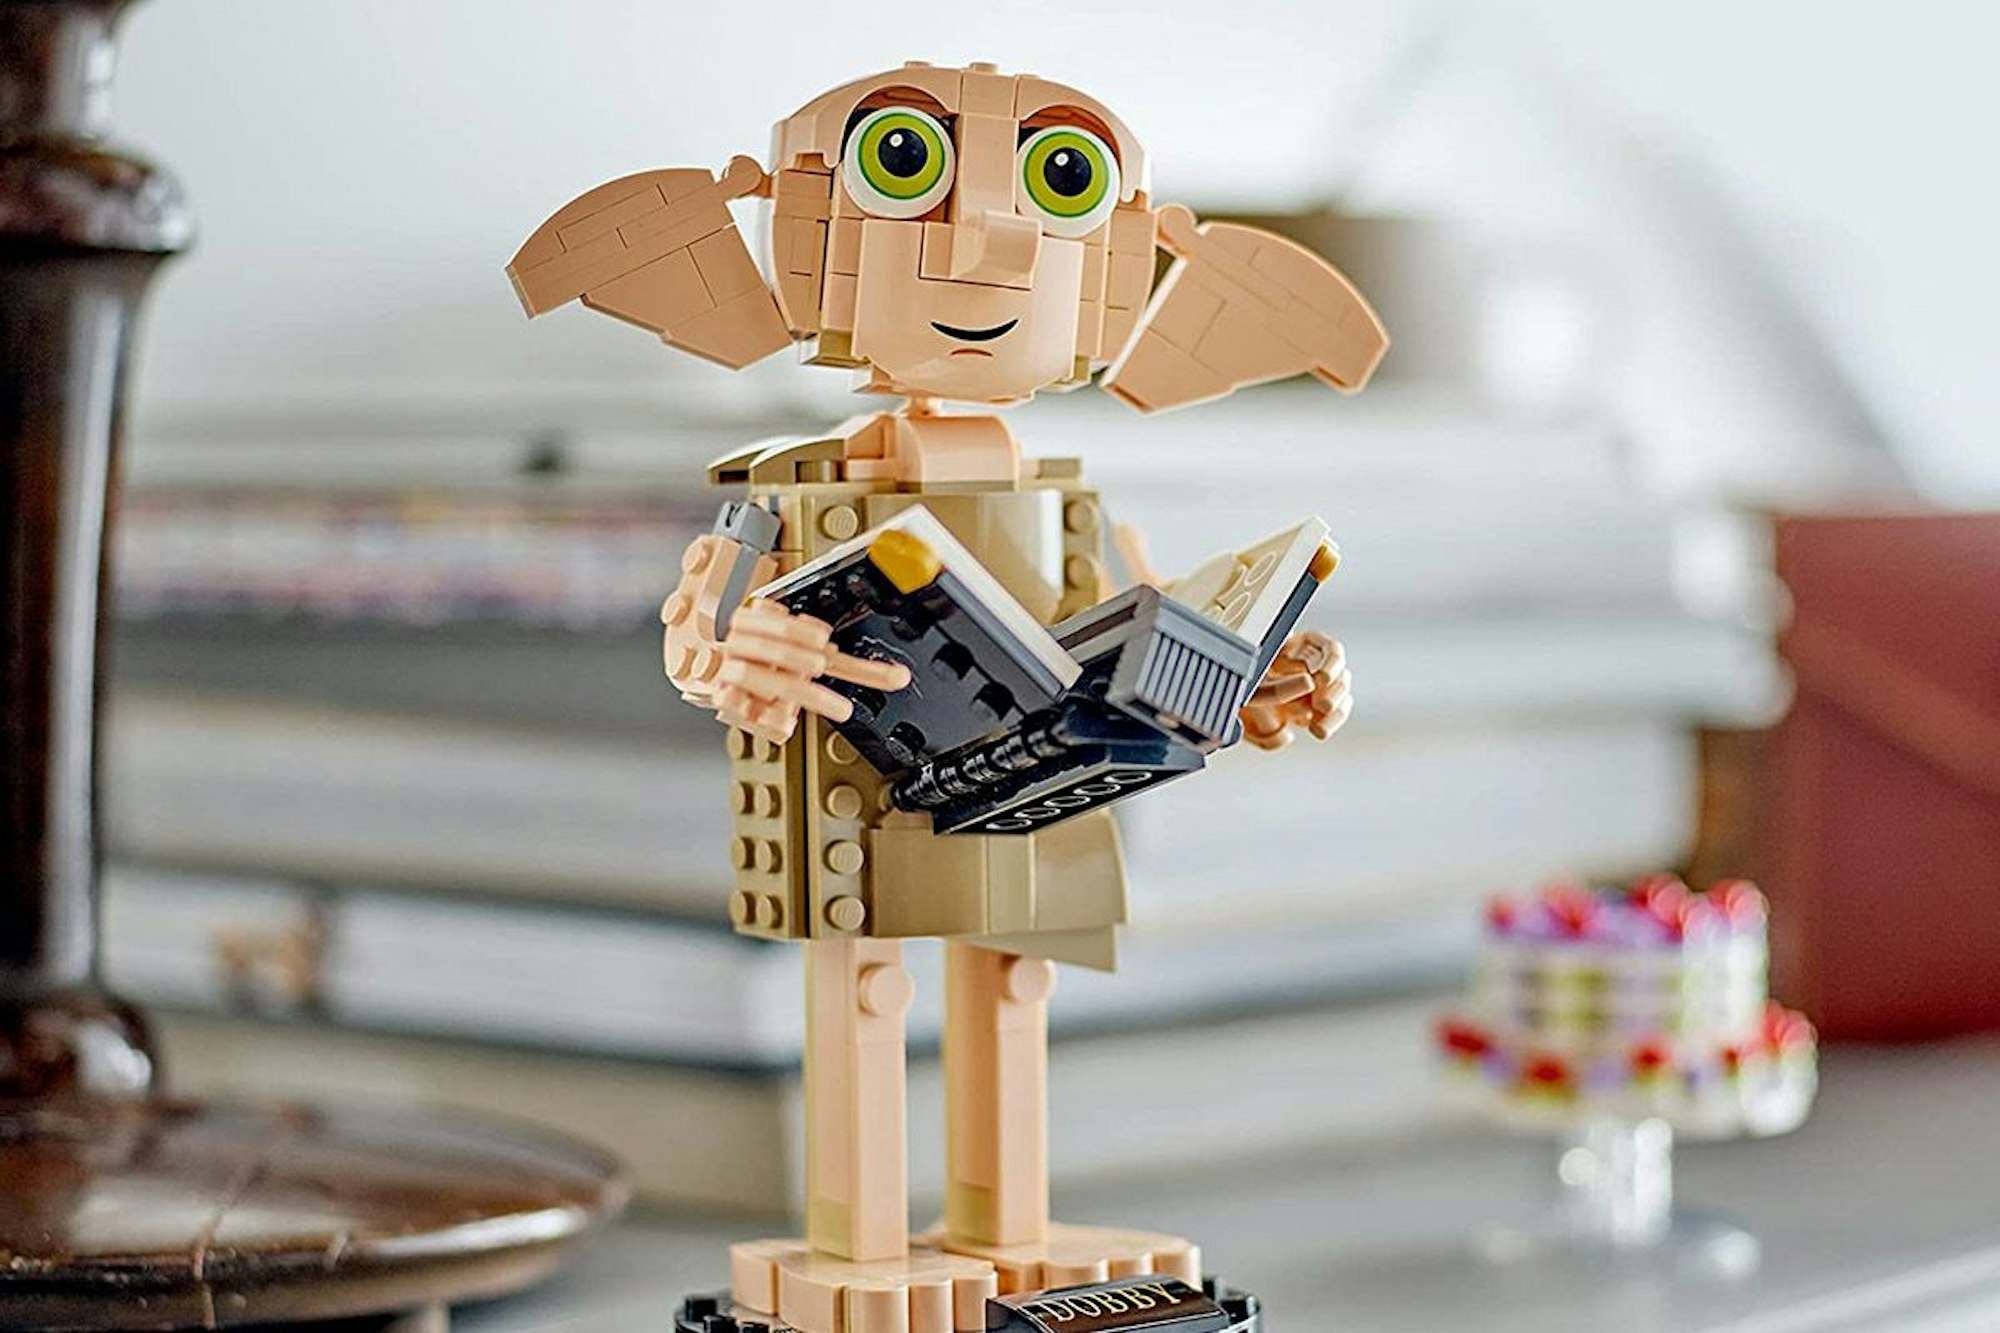 Lego Harry Potter Dobby der Hauself aus Lego-Steinen auf einem Tisch.